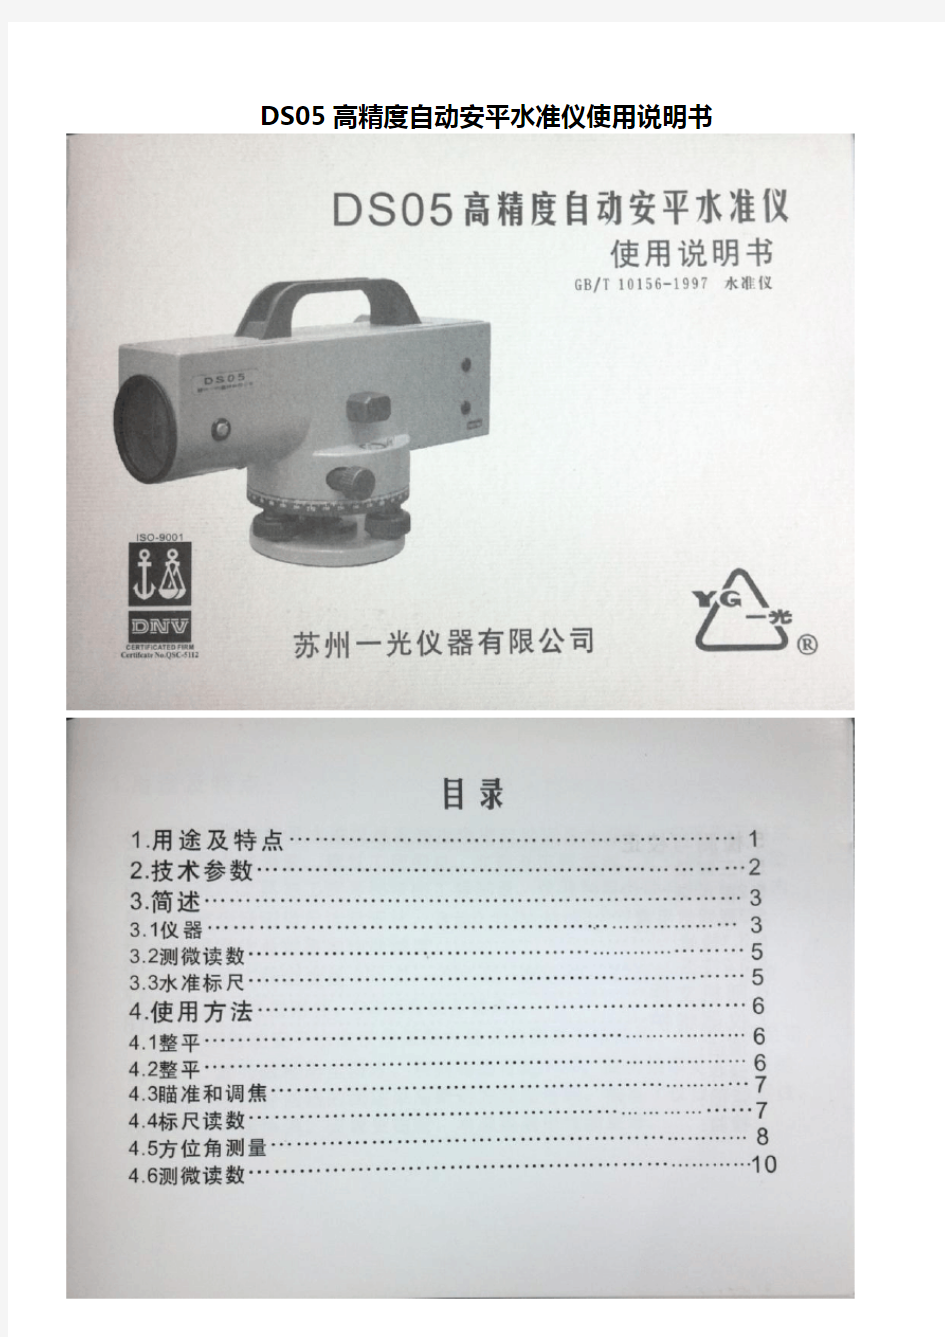 DS05高精度自动安平水准仪使用说明书